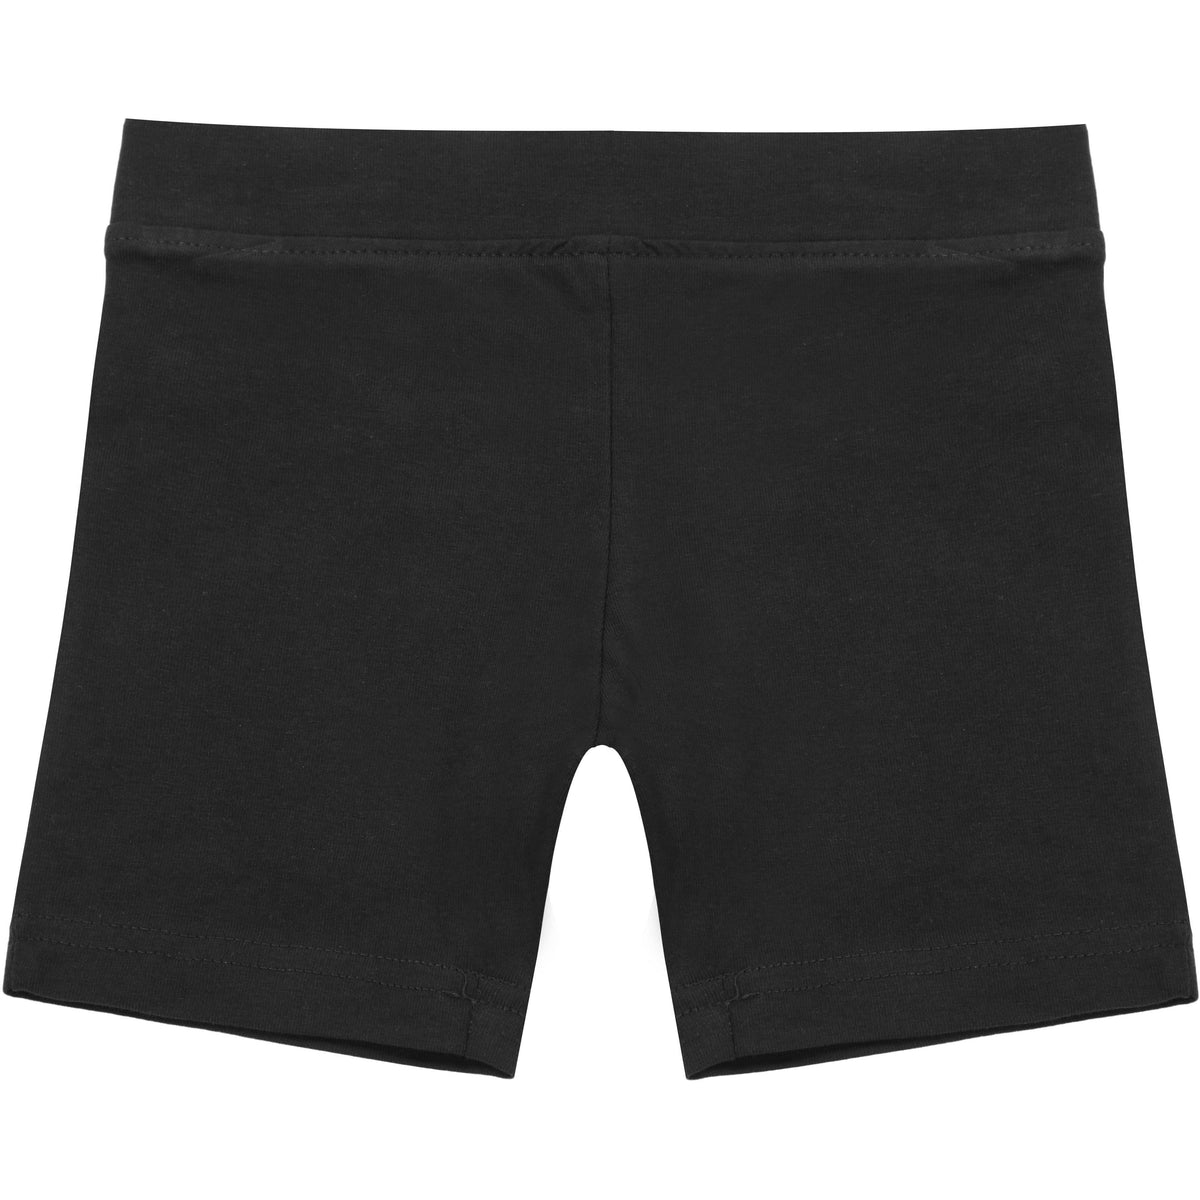 black modesty shorts